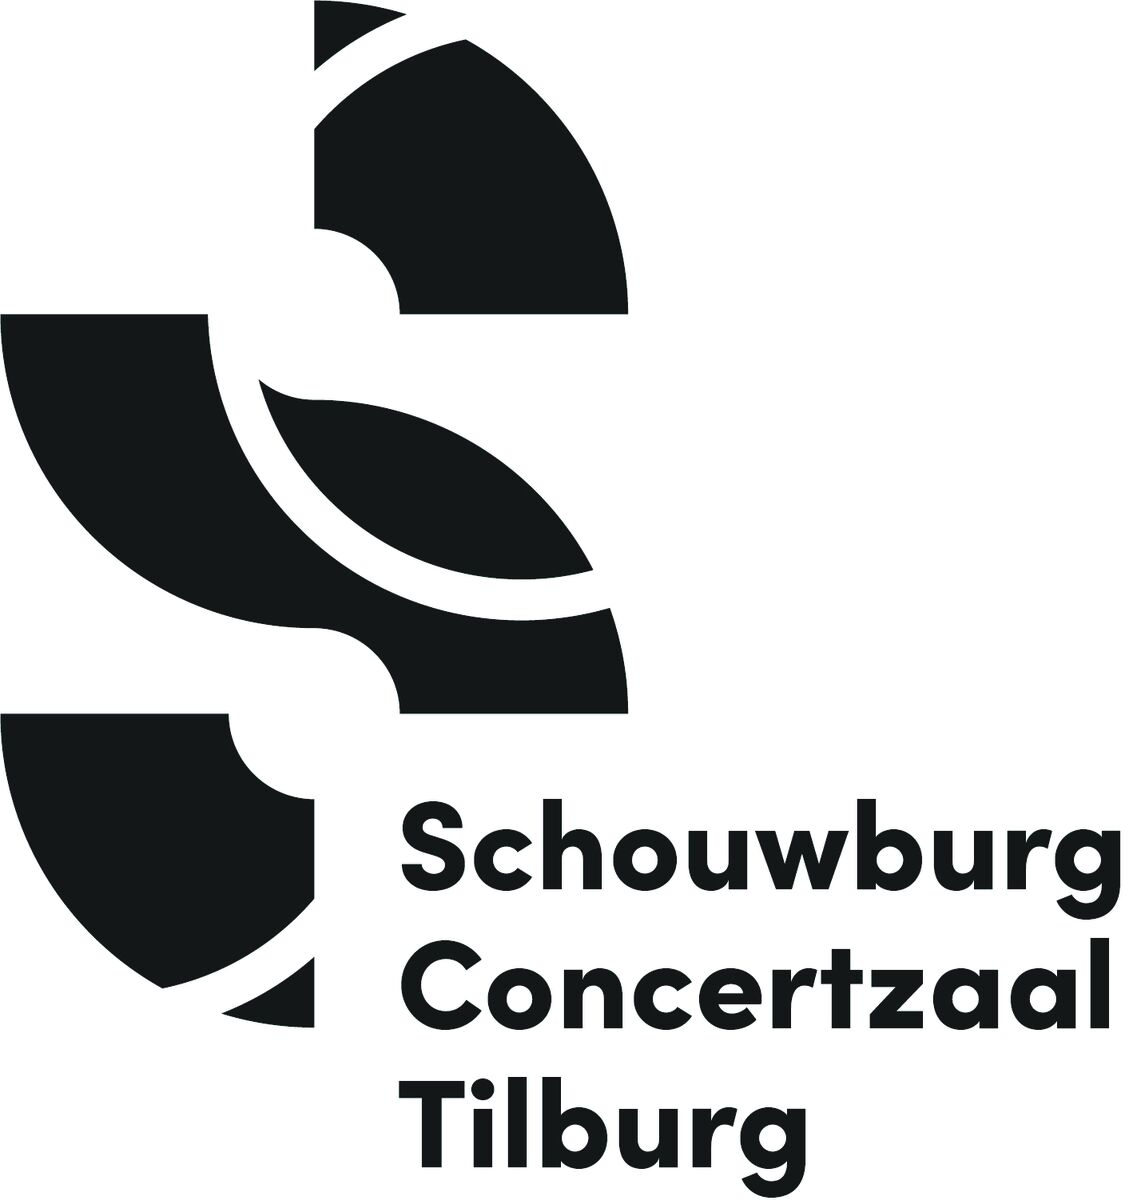 Nieuw logo: Schouwburg Concertzaal Tilburg (fotograaf: Cre8tion)